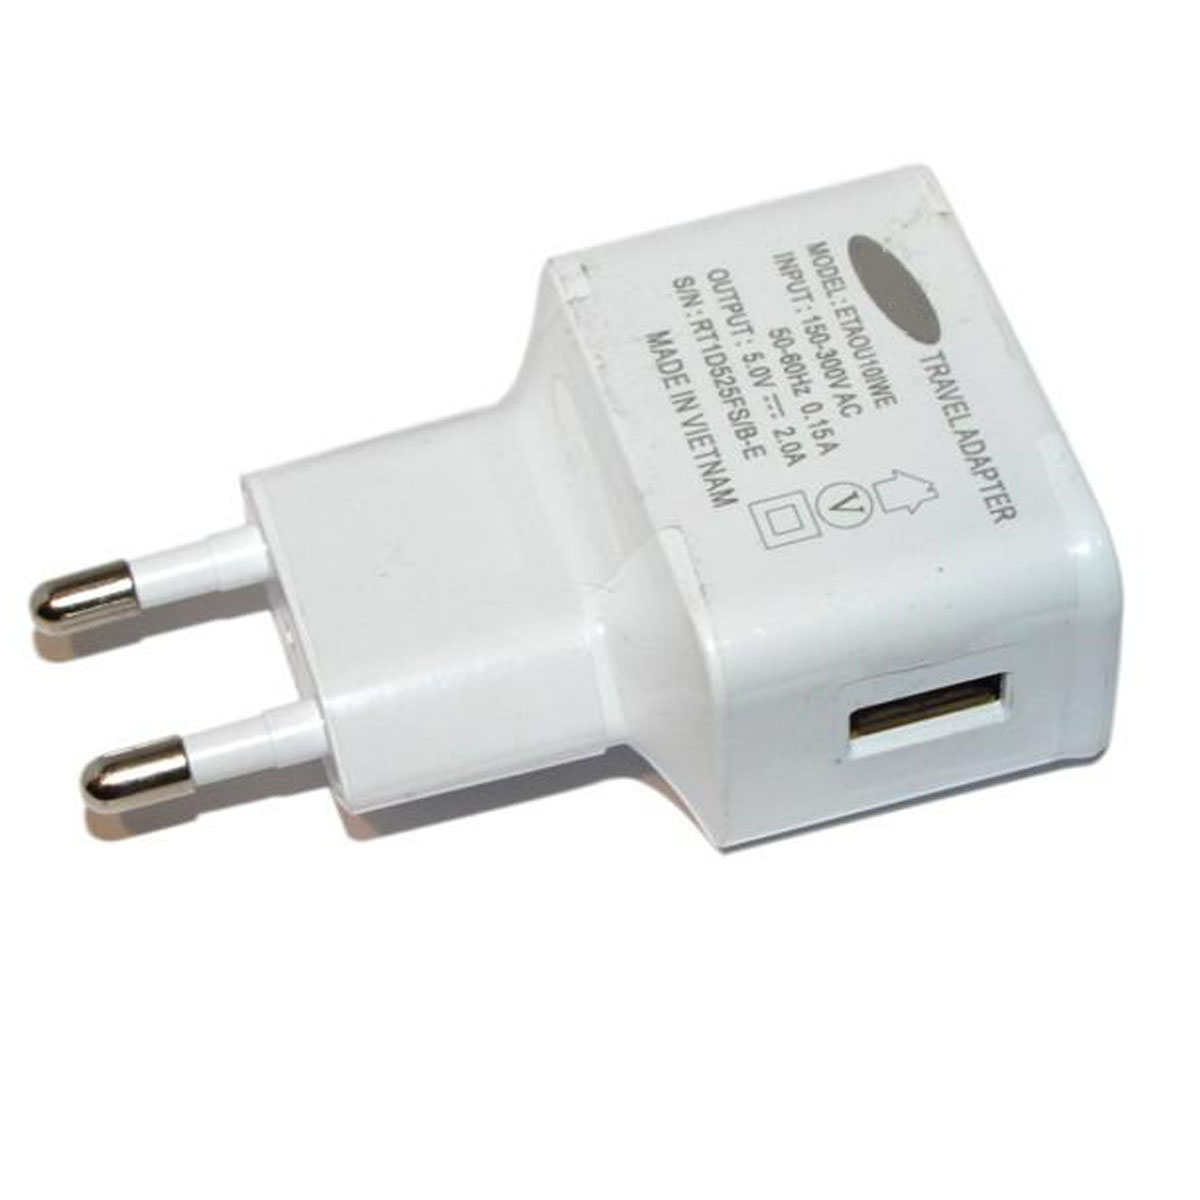 СЗУ (Сетевое зарядное устройство) ETAOU10IWE, 2A, 1 USB, цвет белый